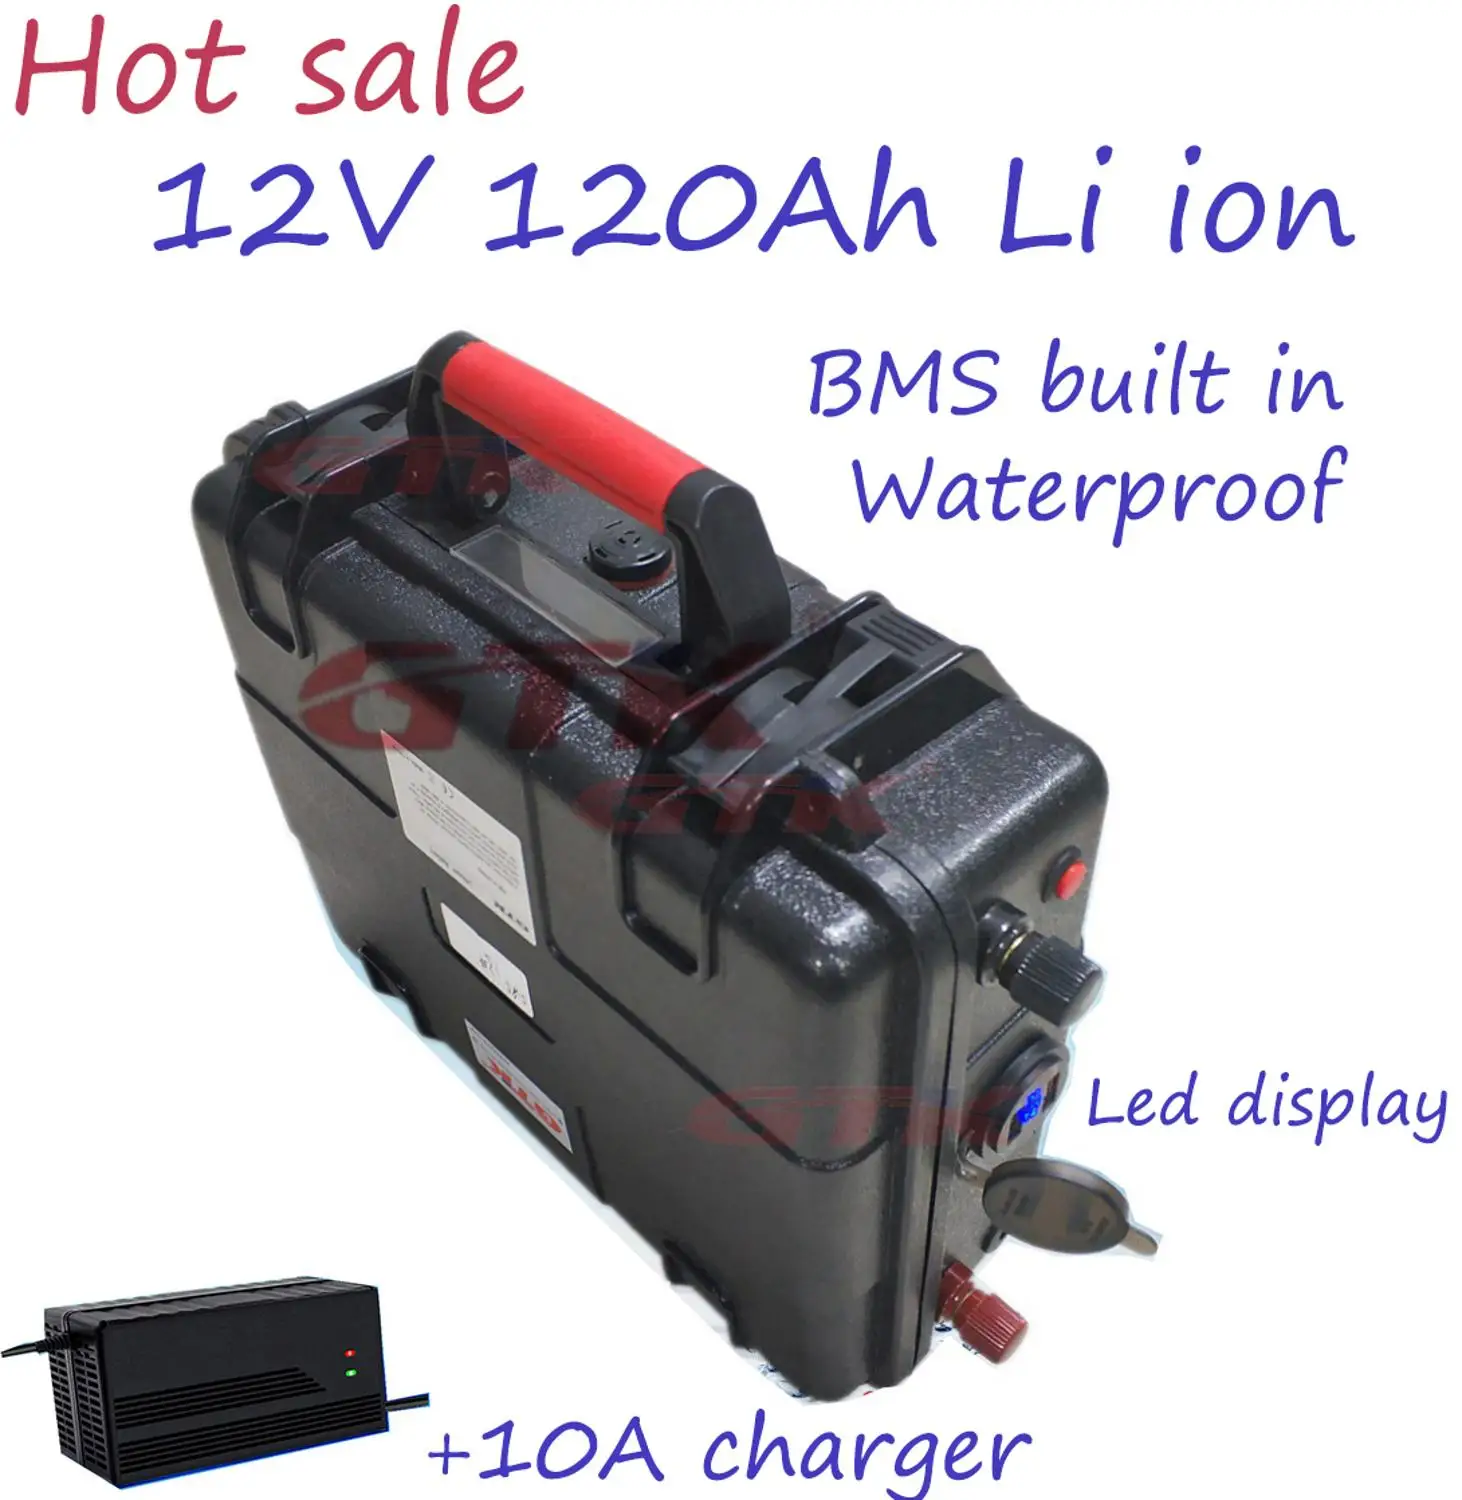 Блок литиевых батарей 12V 120AH истинной емкости блок литиевых батарей 120AH с зарядным устройством 10A лодочный мотор, солнечный, светодиодный, RV, Троллинговый Мотор